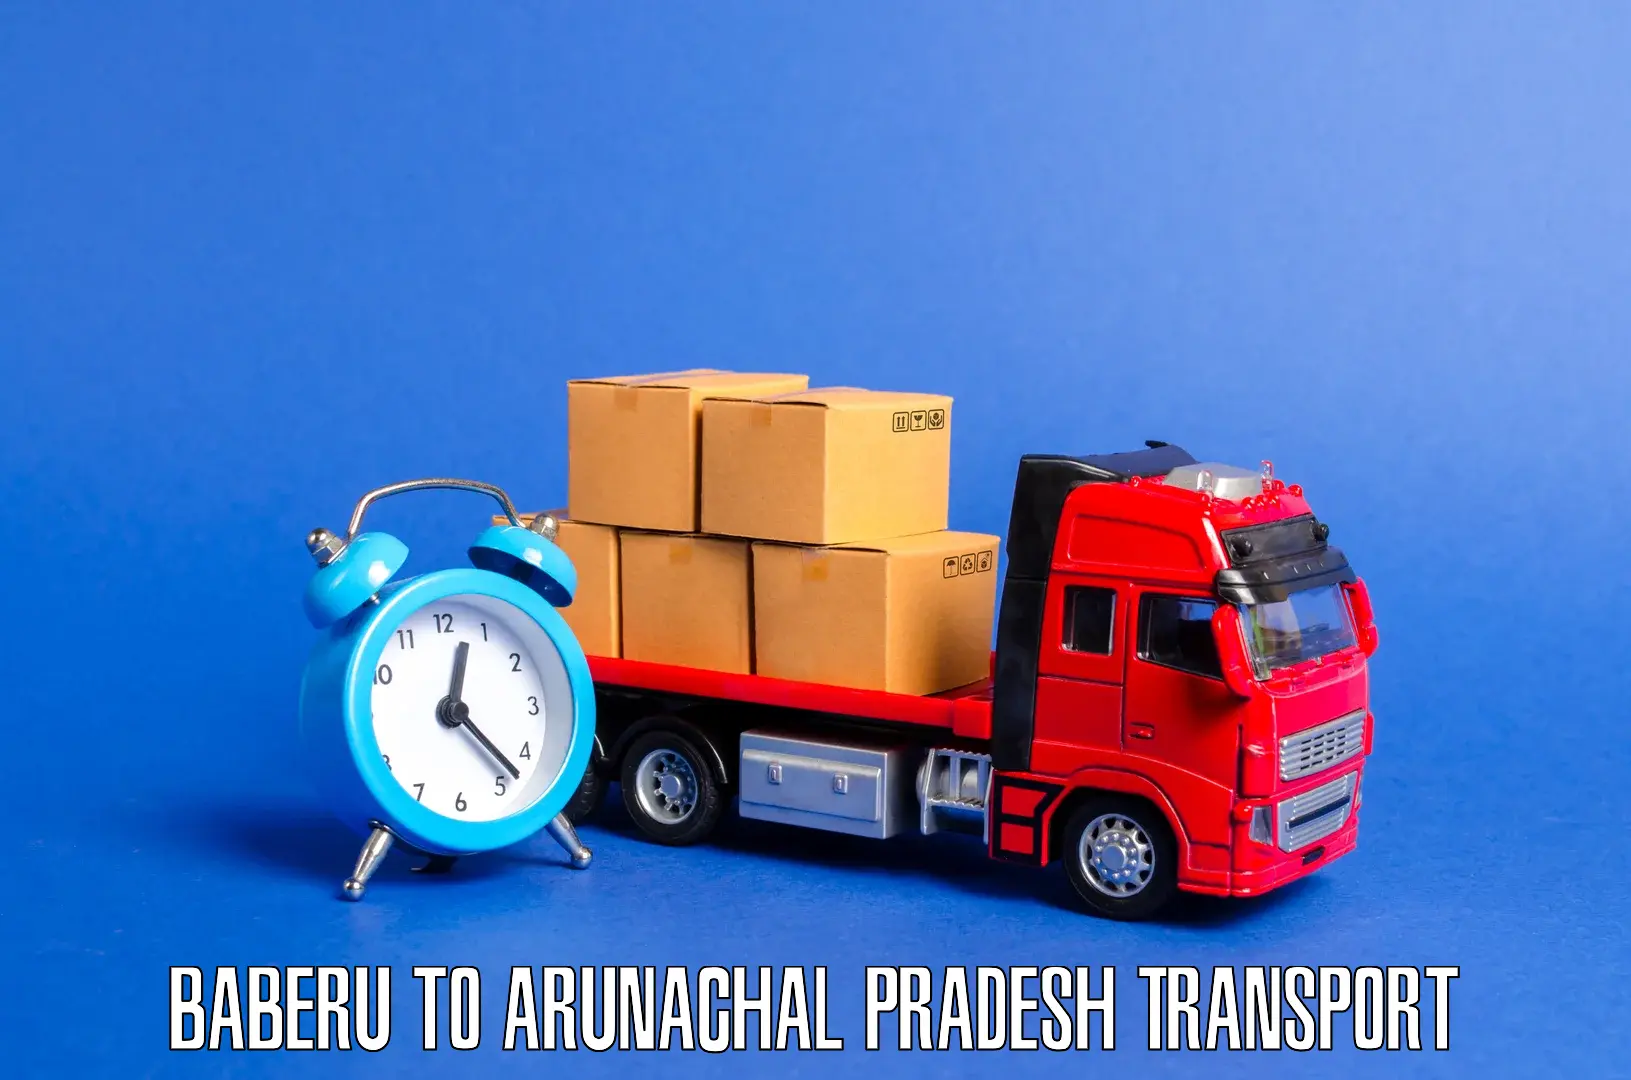 Nearest transport service Baberu to Arunachal Pradesh